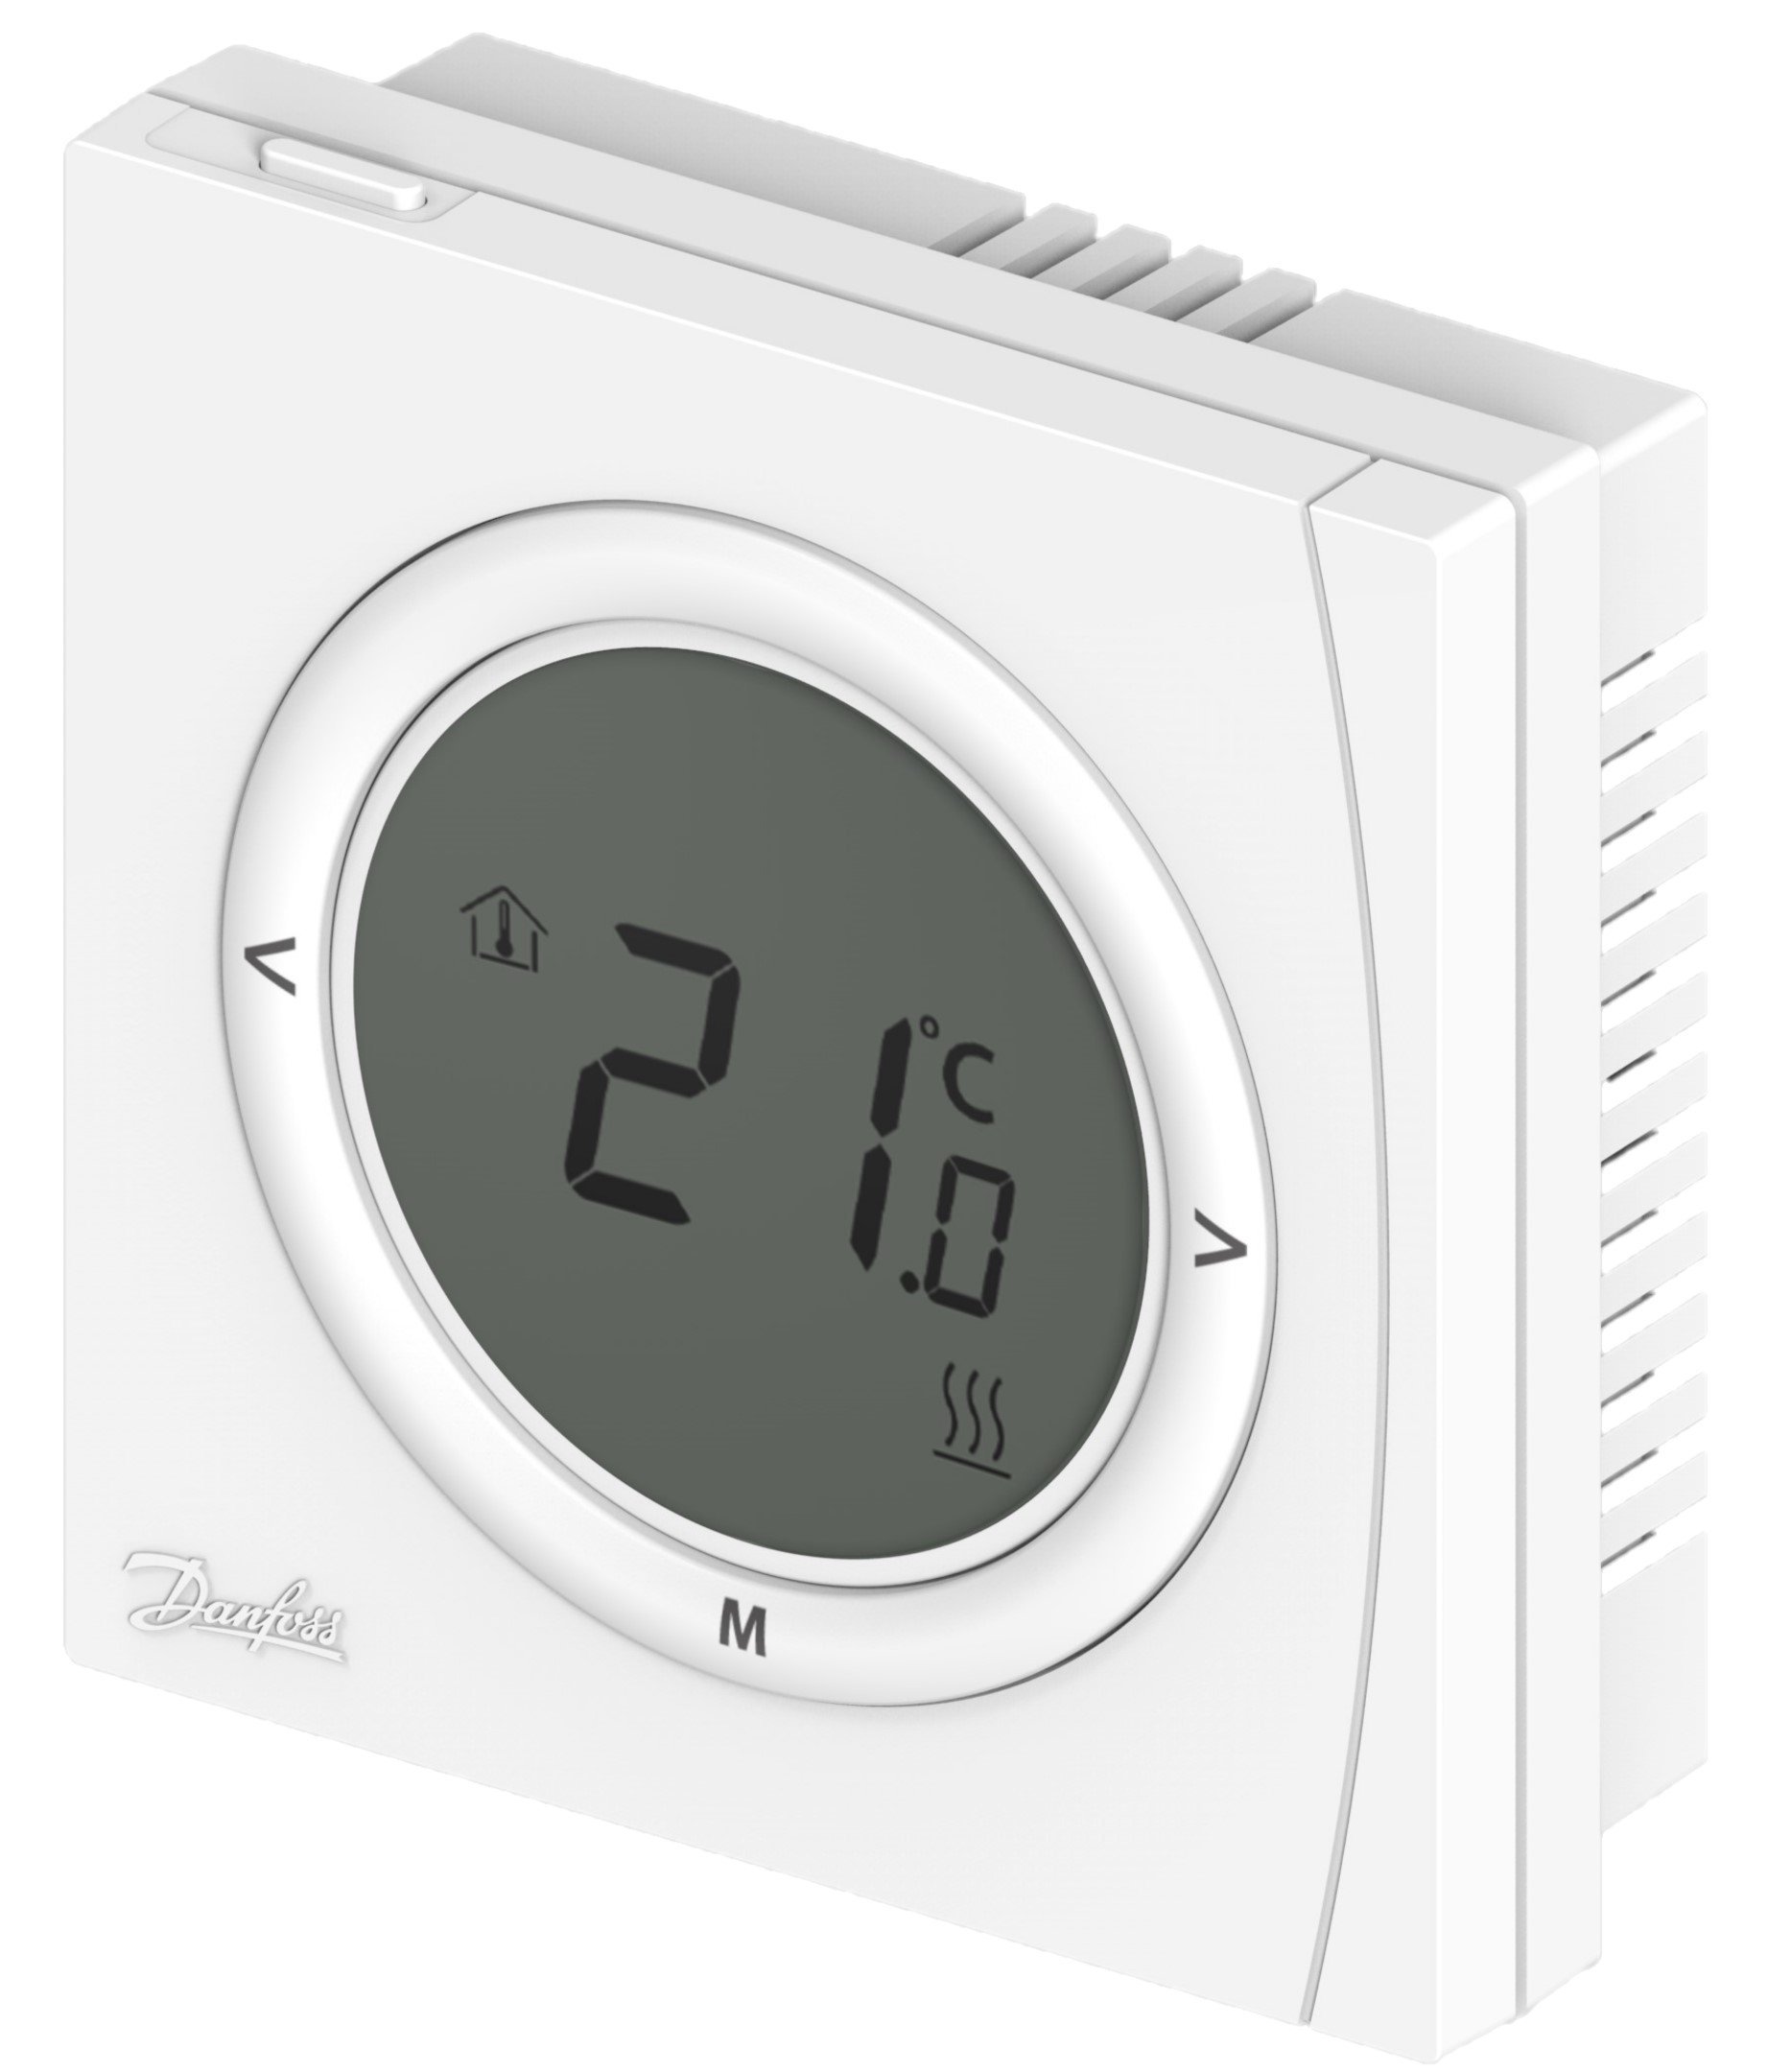 danfoss yerden ısıtma oda termostatı